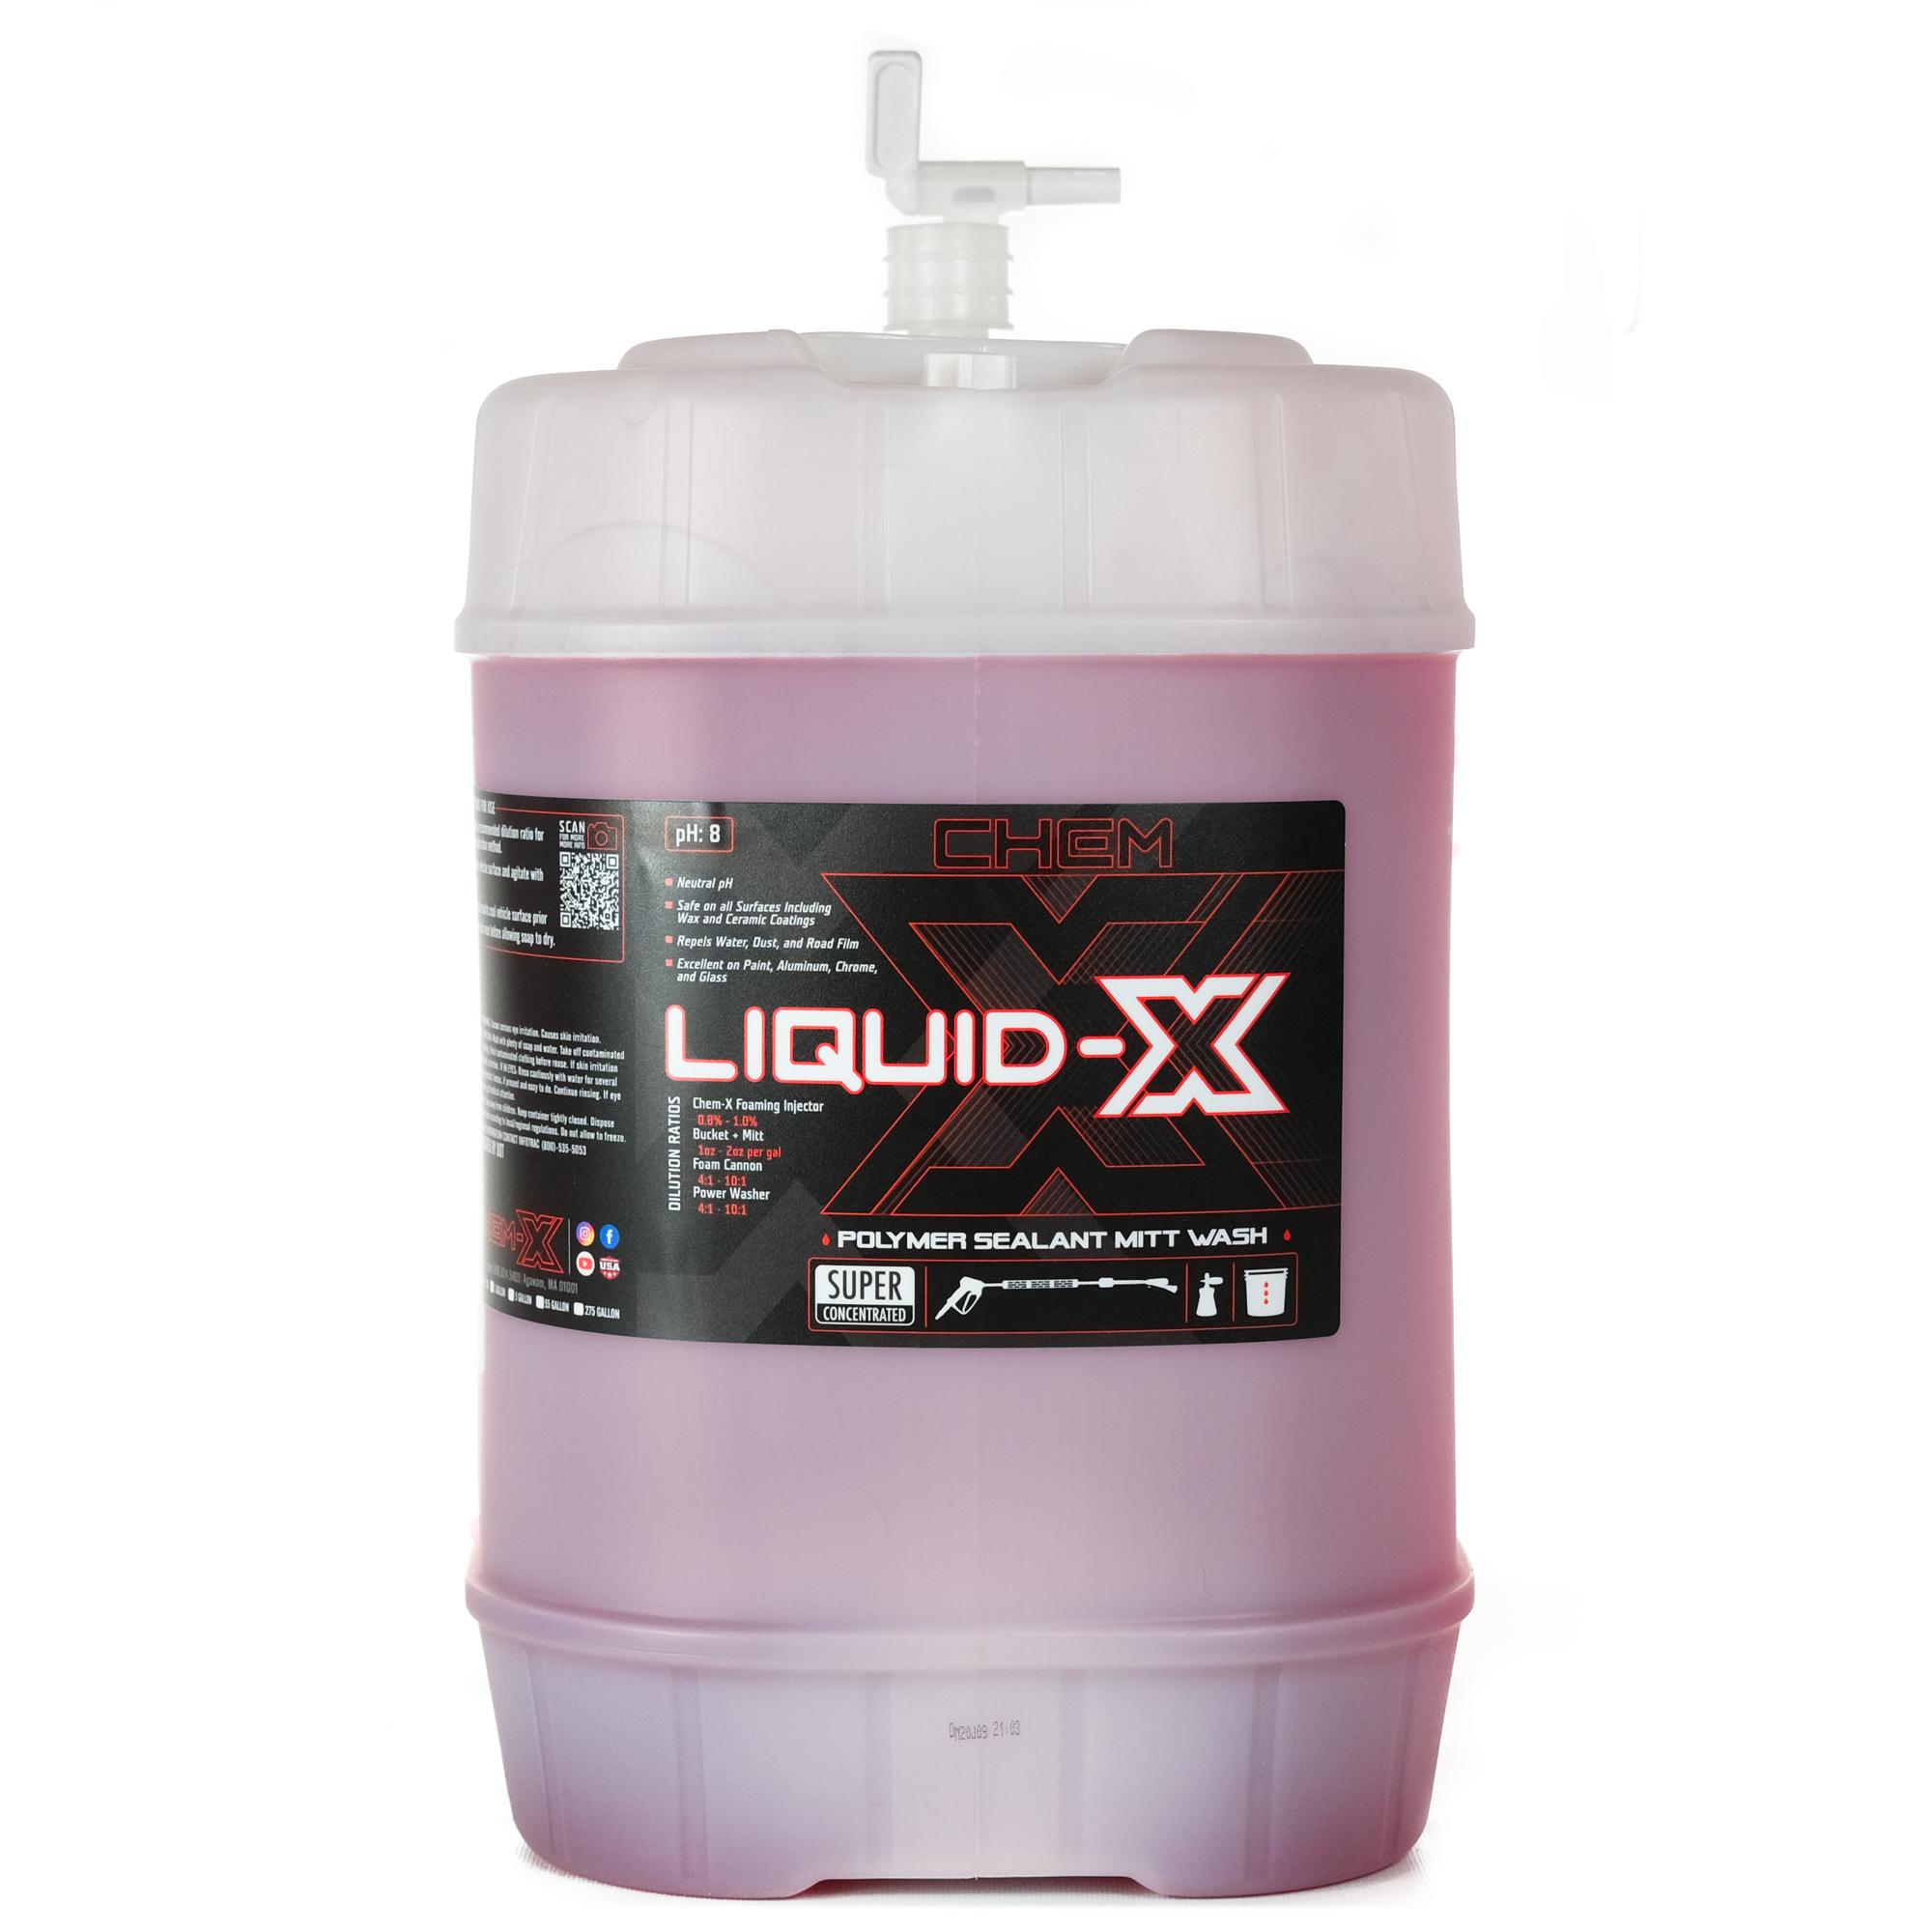 Liquid-X Synthetic Polymer Wash - Chem-X